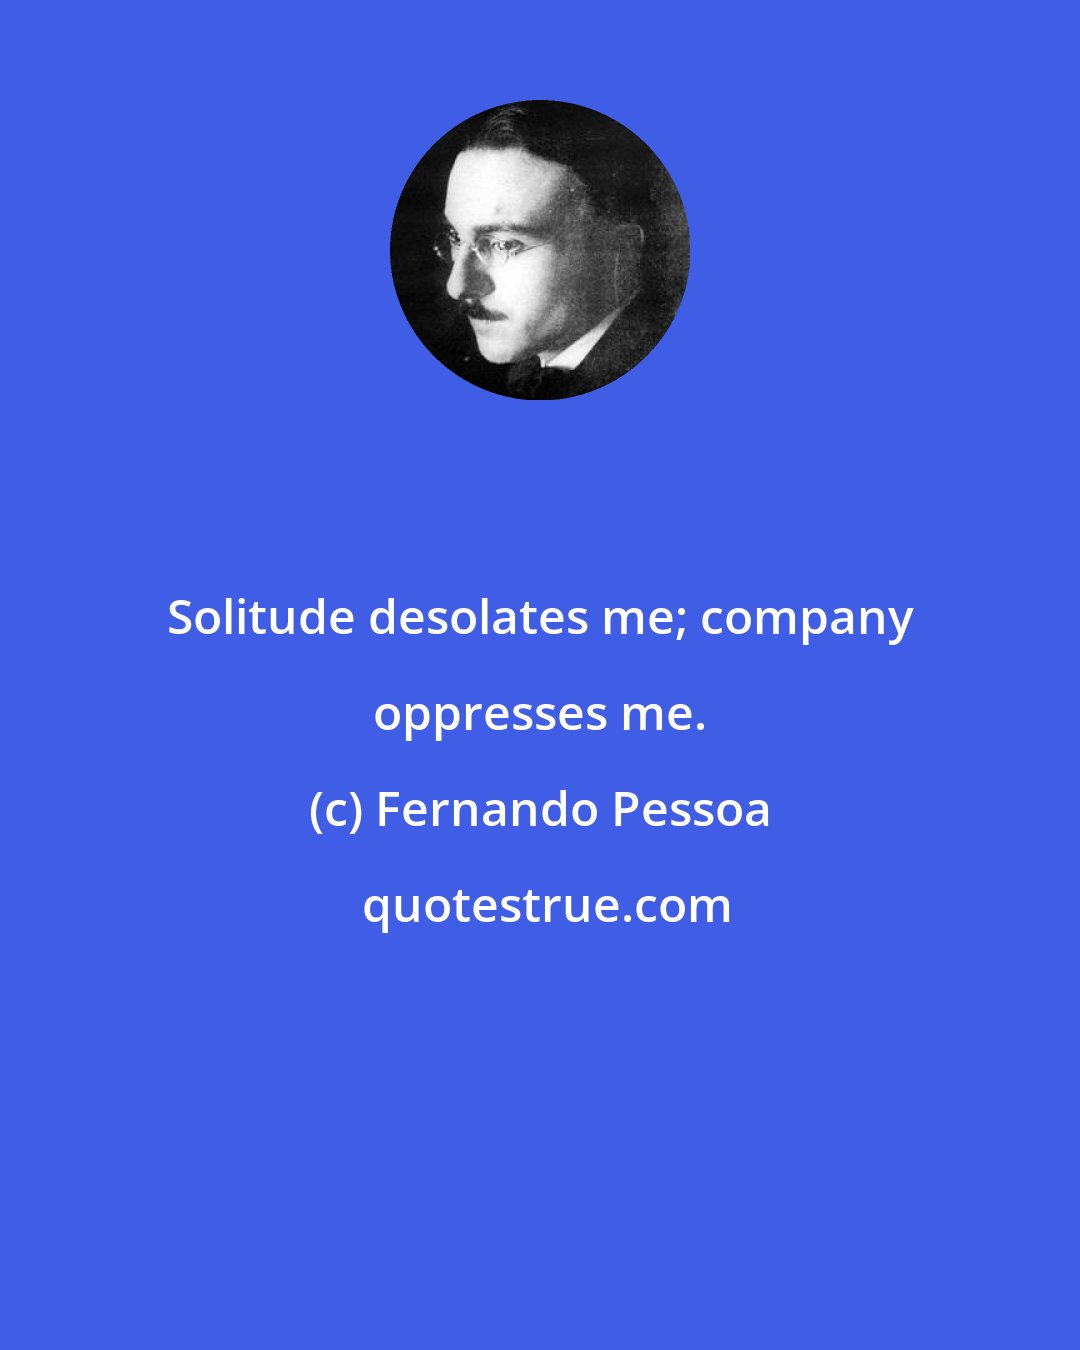 Fernando Pessoa: Solitude desolates me; company oppresses me.